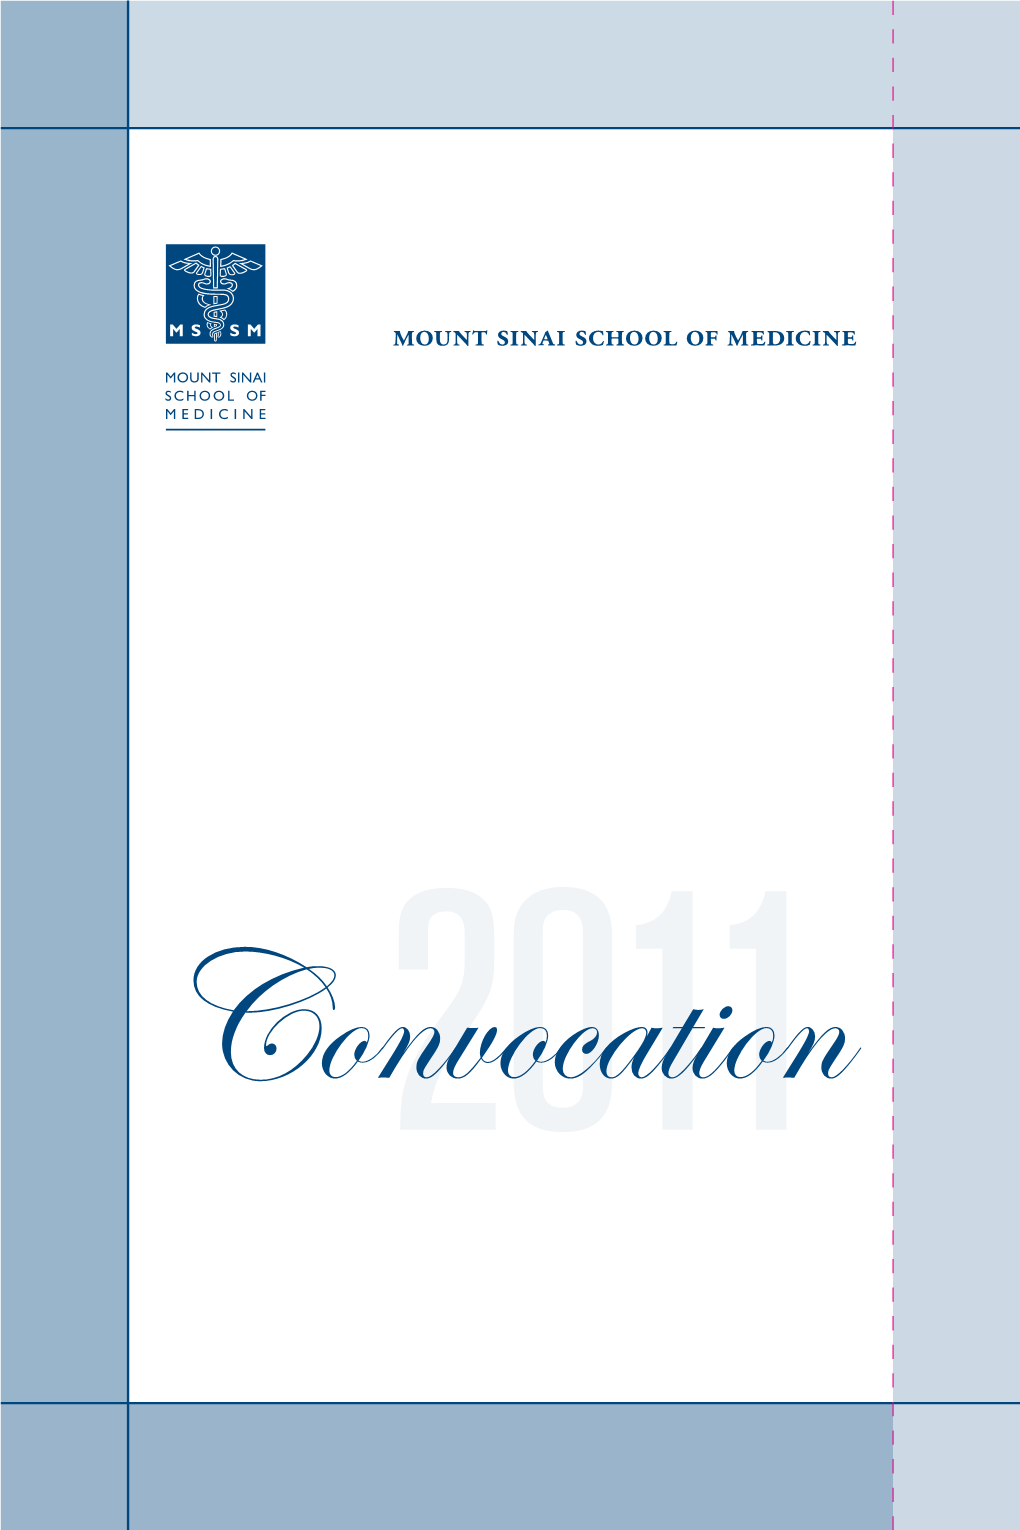 2011 Convocation Program